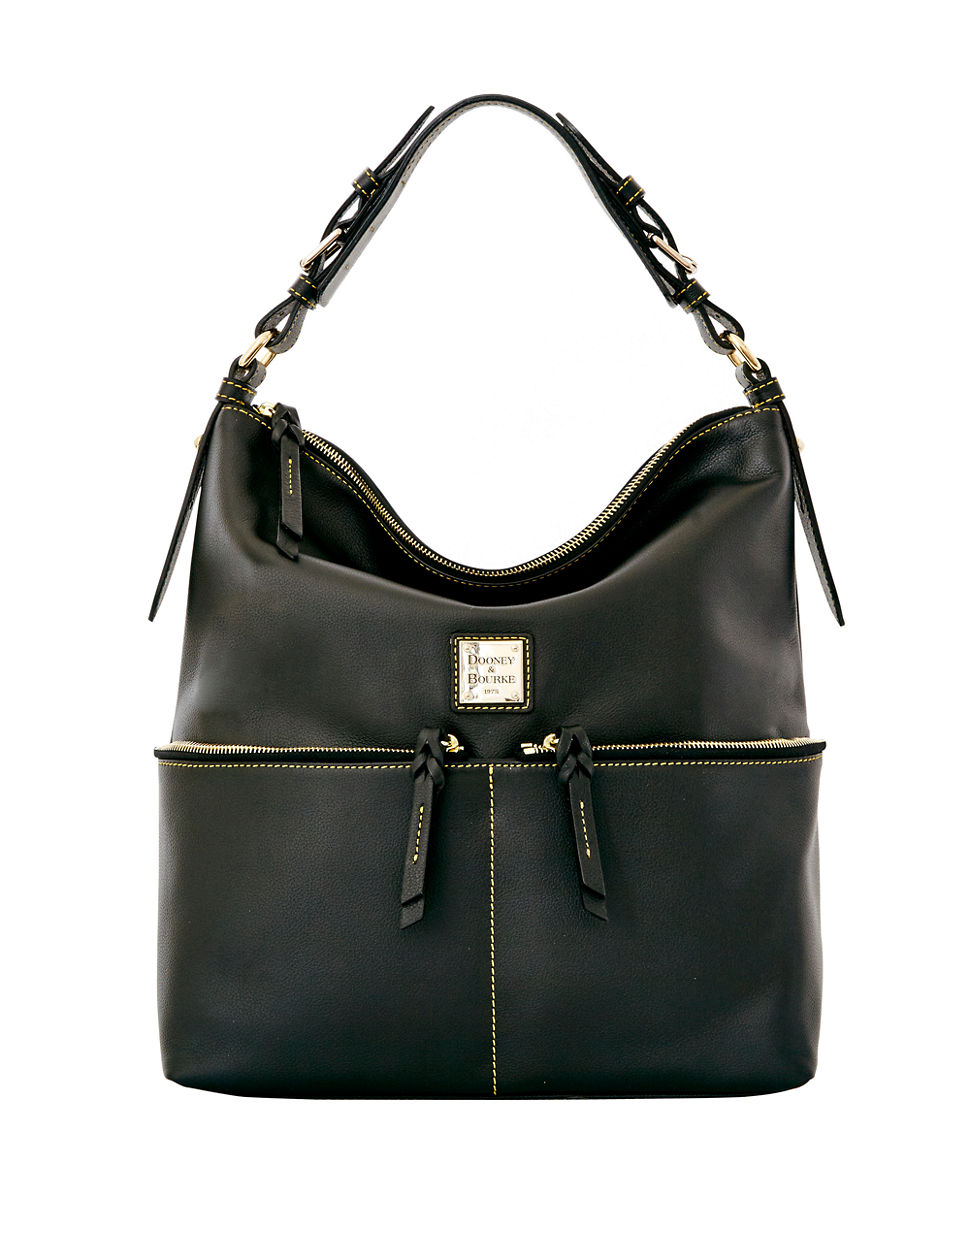 Dooney & Bourke Seville Leather Hobo Bag in Black | Lyst